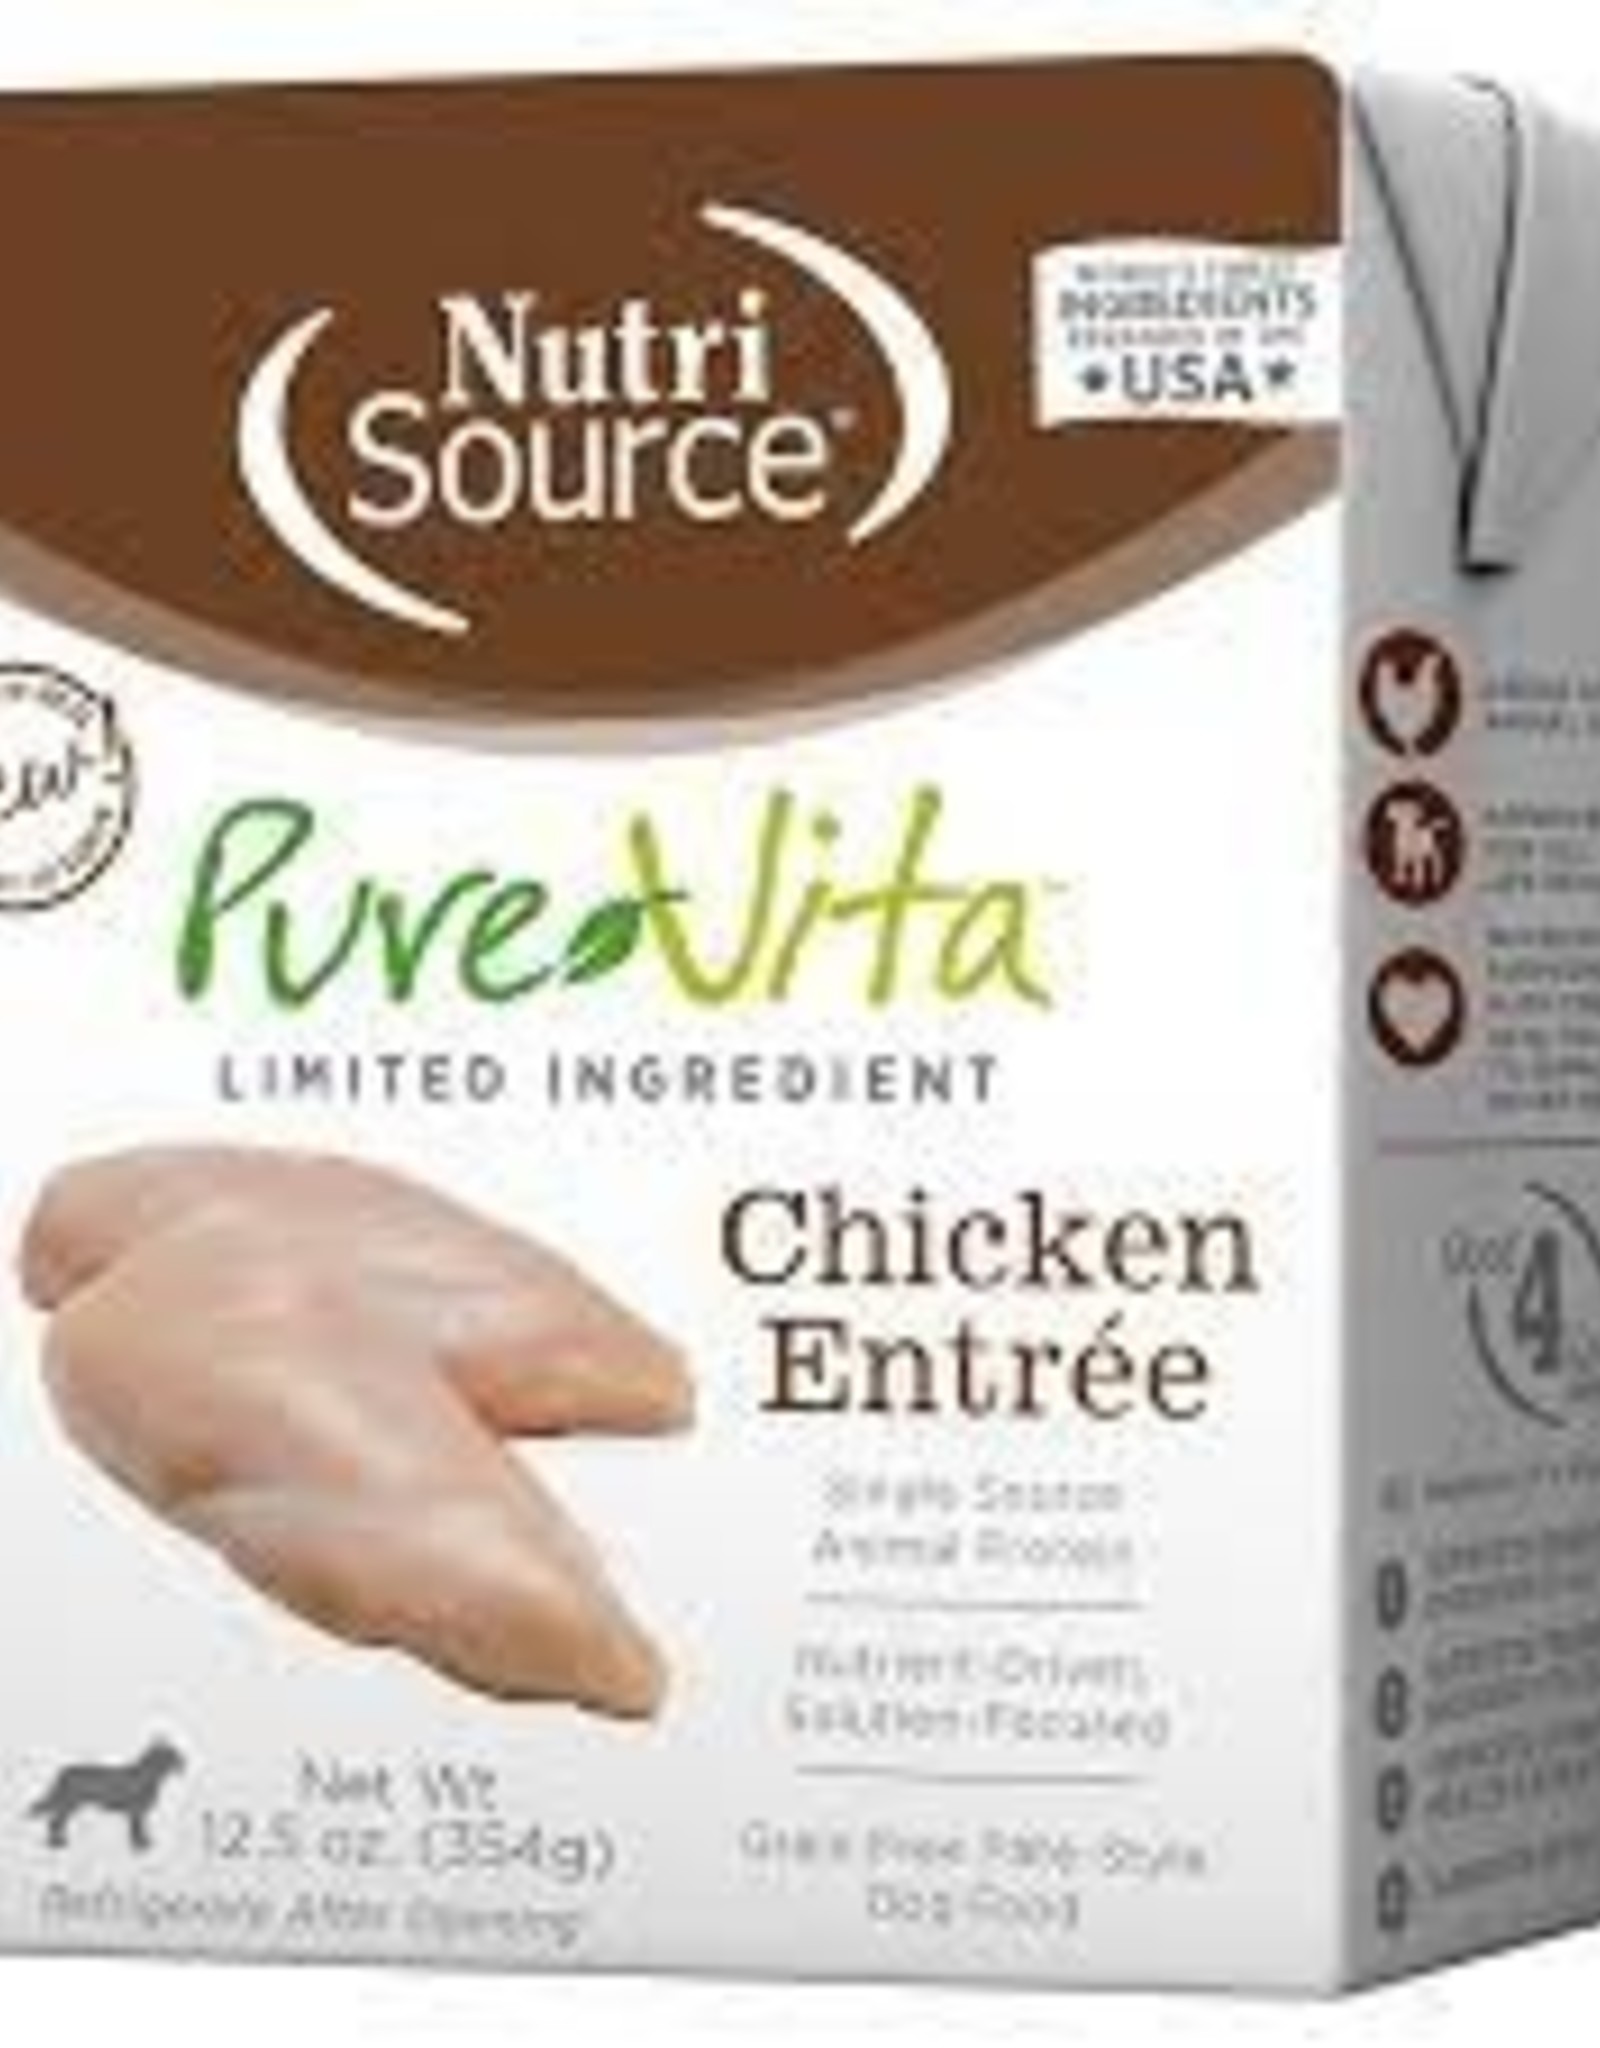 NutriSource NutriSource Pure Vita Tetra Pak